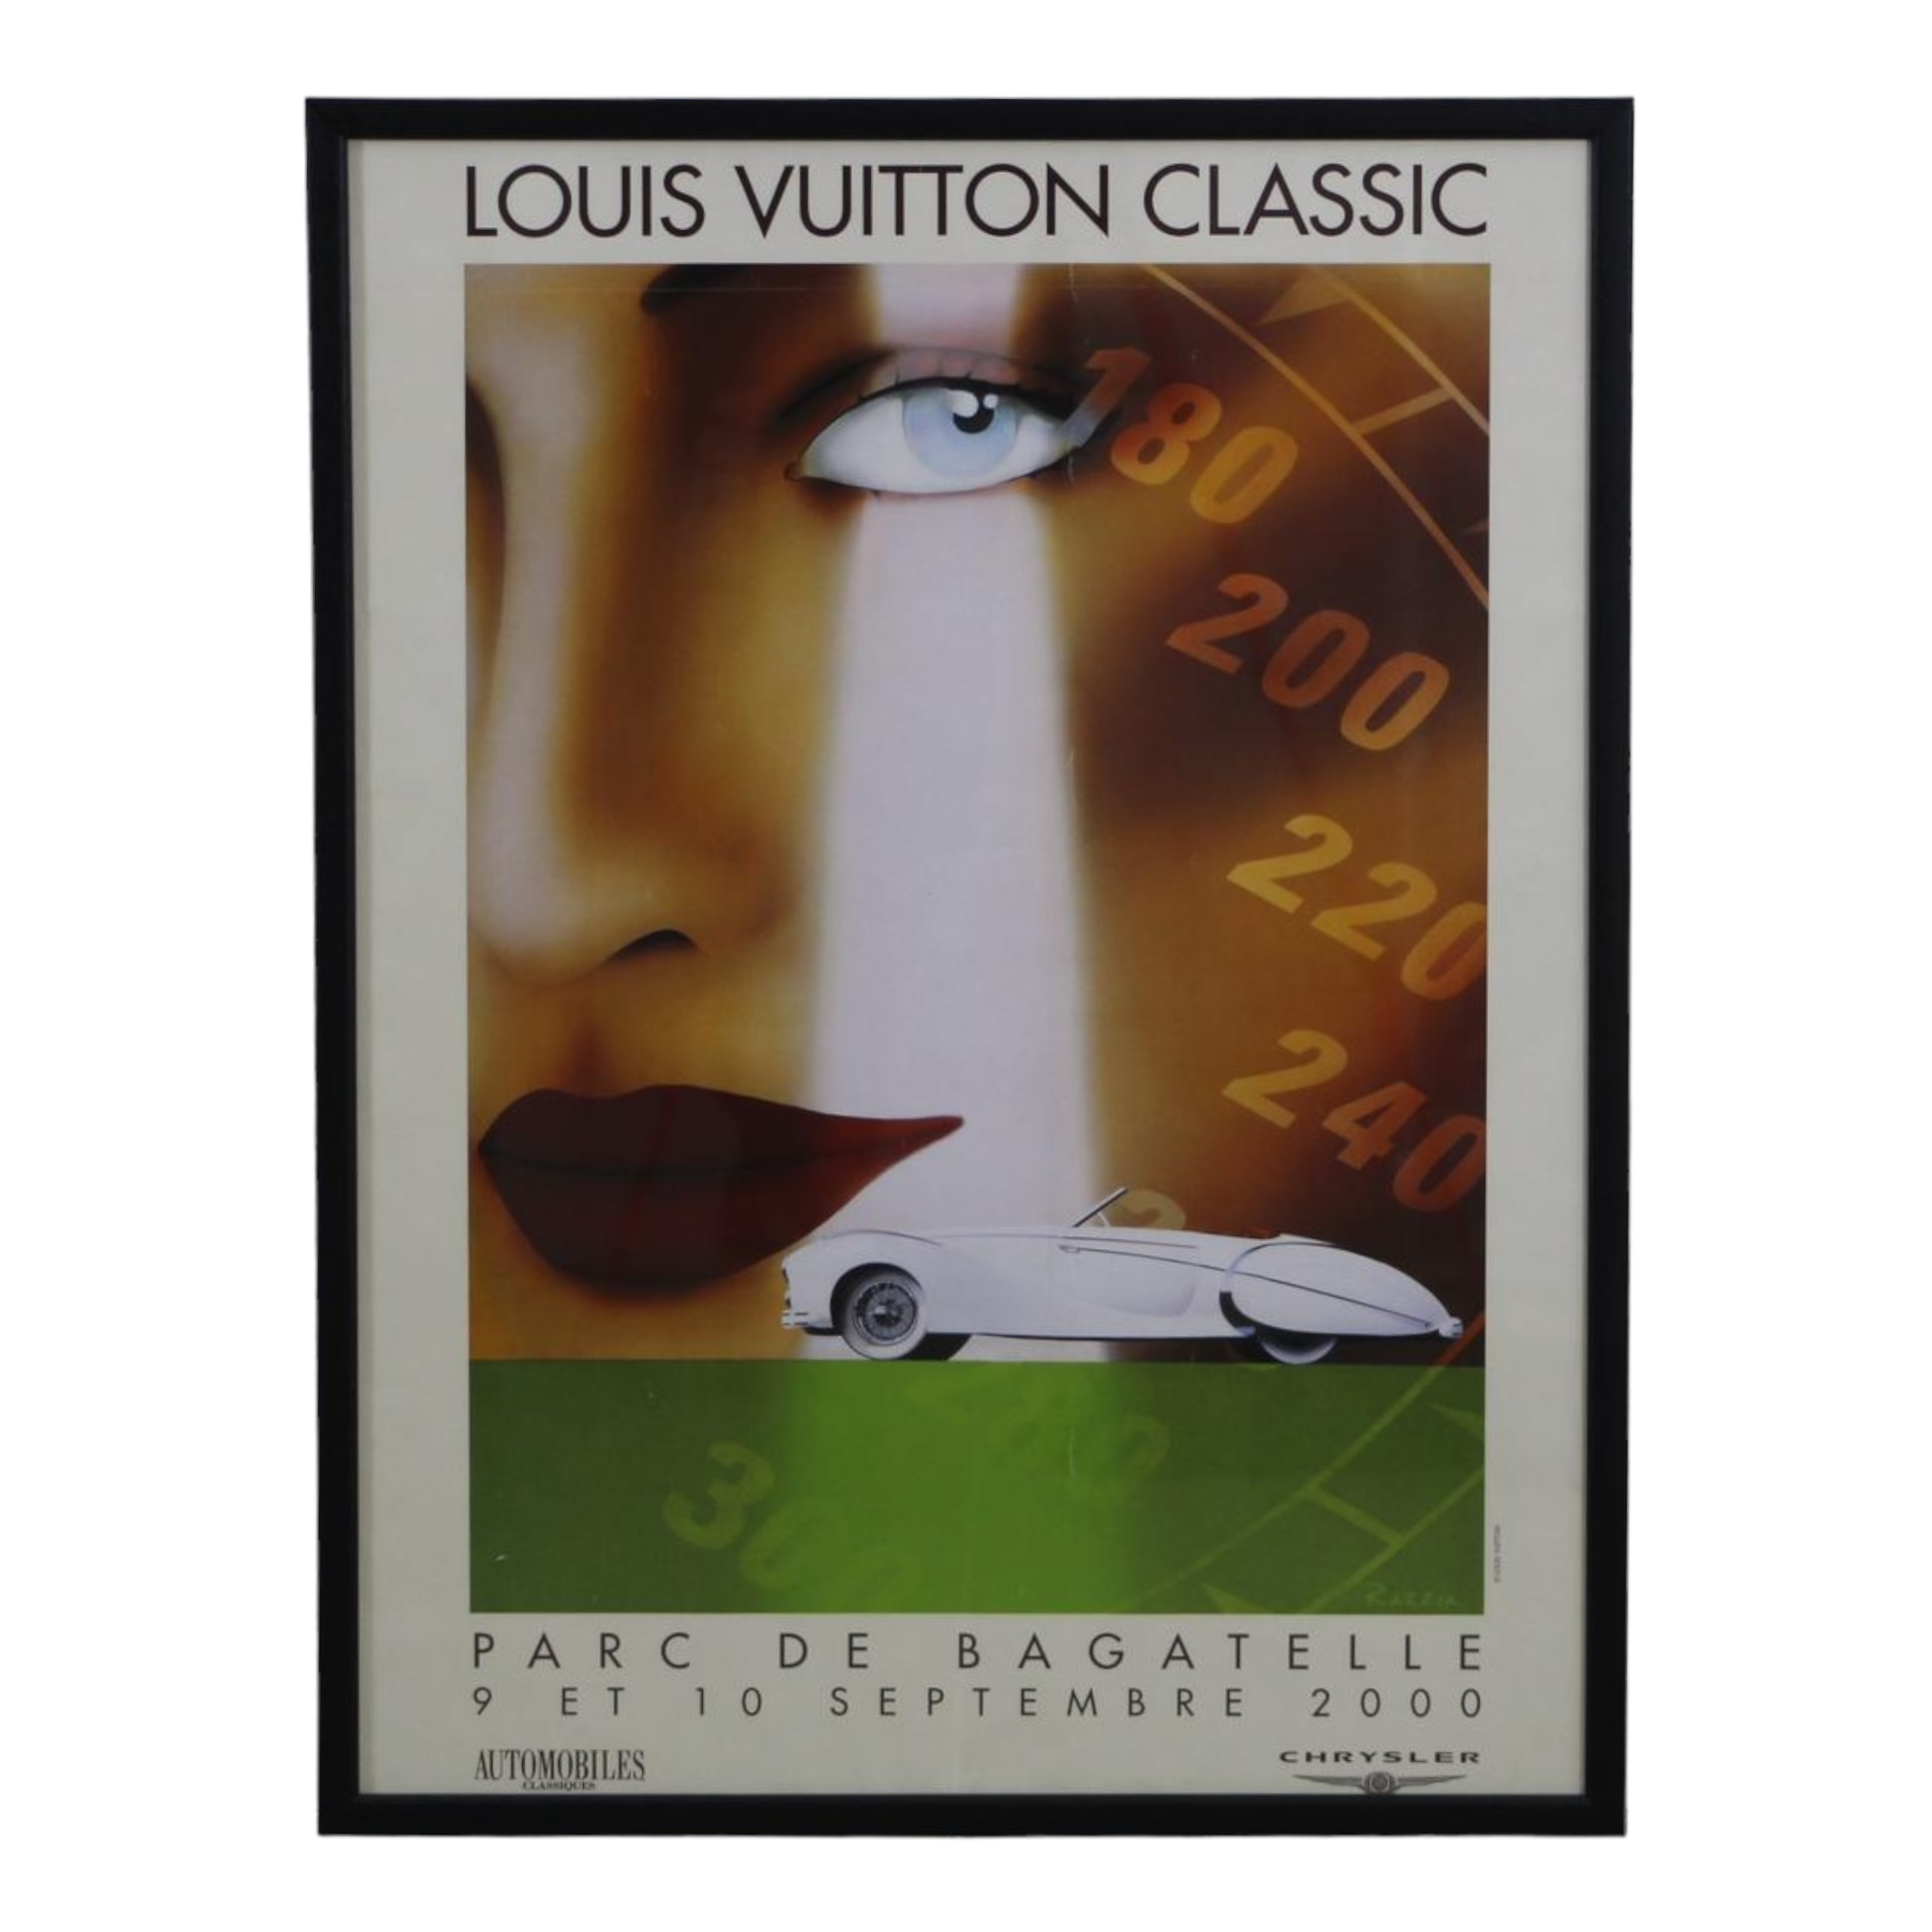 Louis Vuitton - Parc de bagatelle